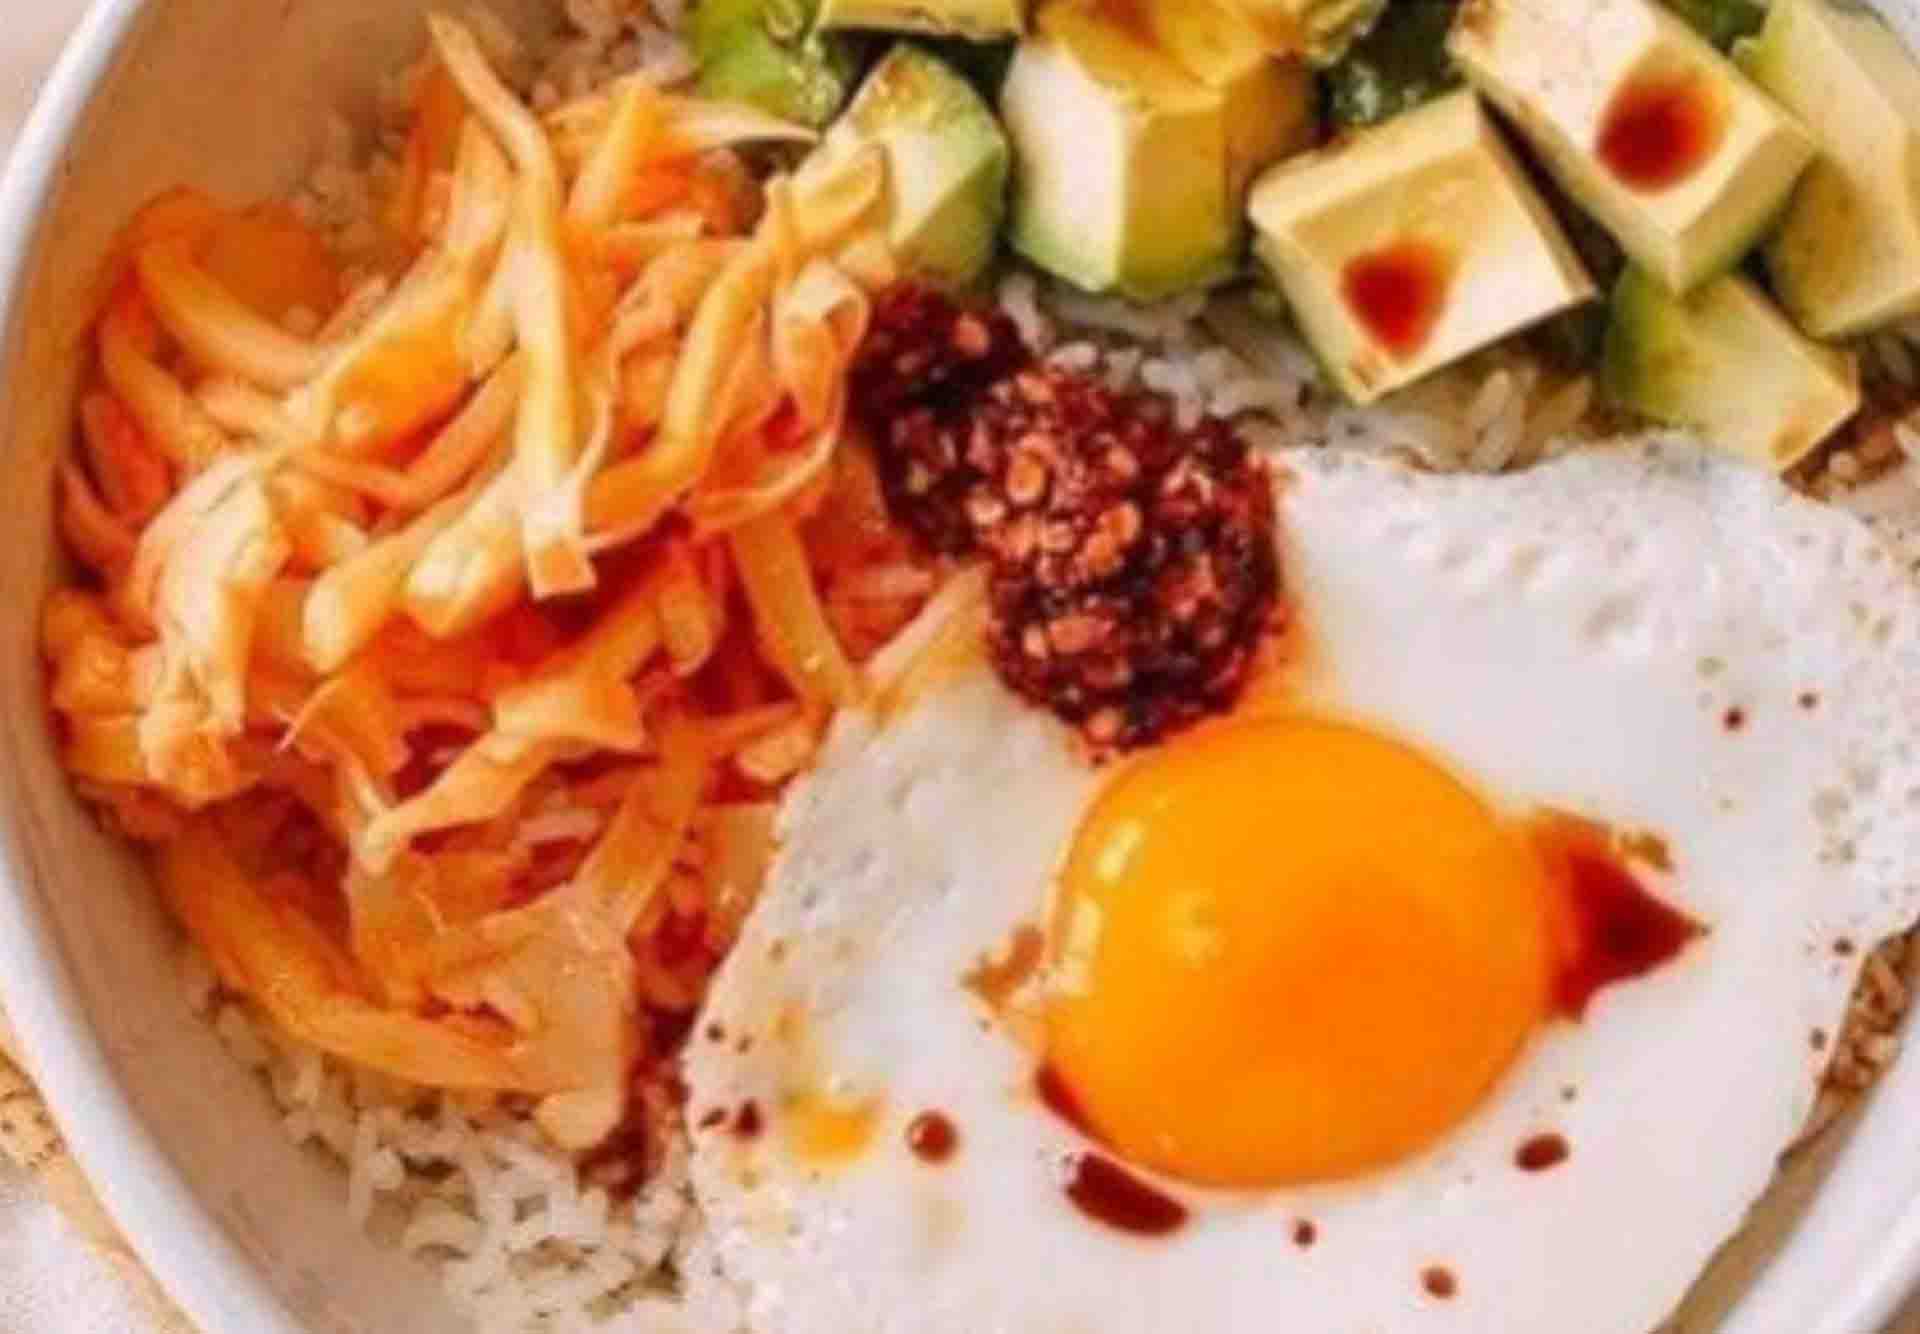 Rice Eggs Avocado & Chili Fusion